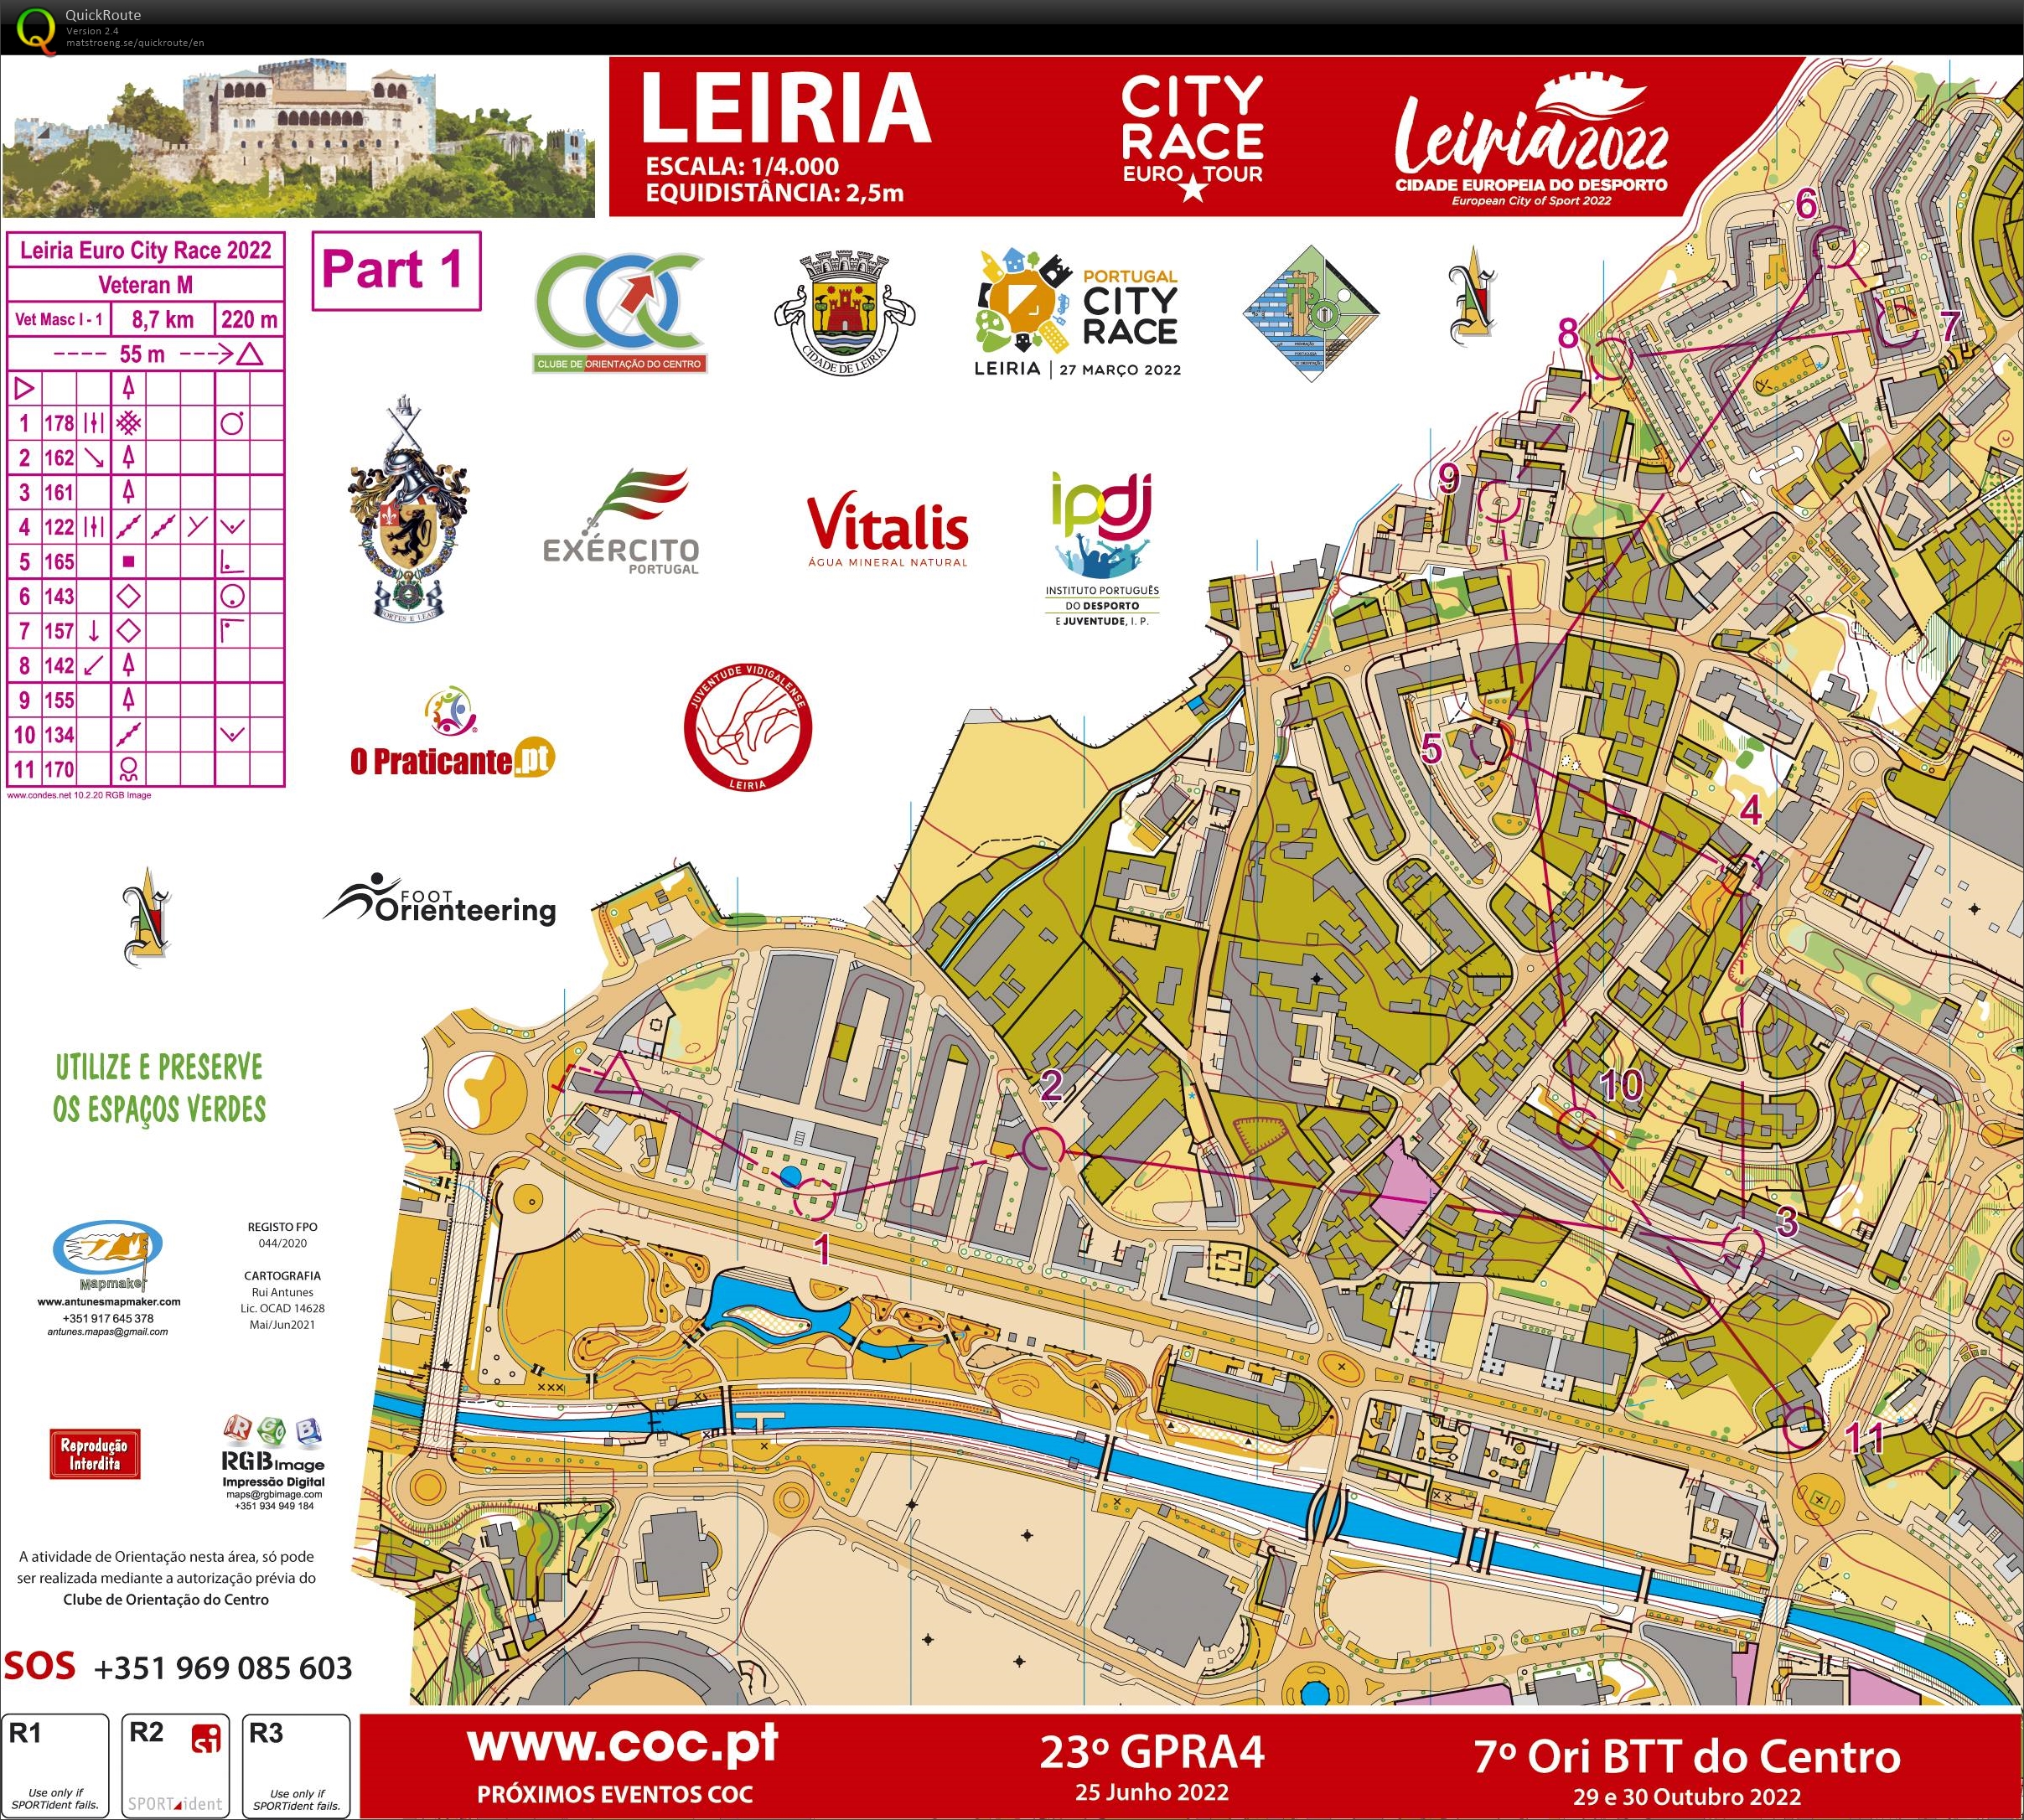 Leiria City Race Euro Tour 2022 (Part1) (27.03.2022)